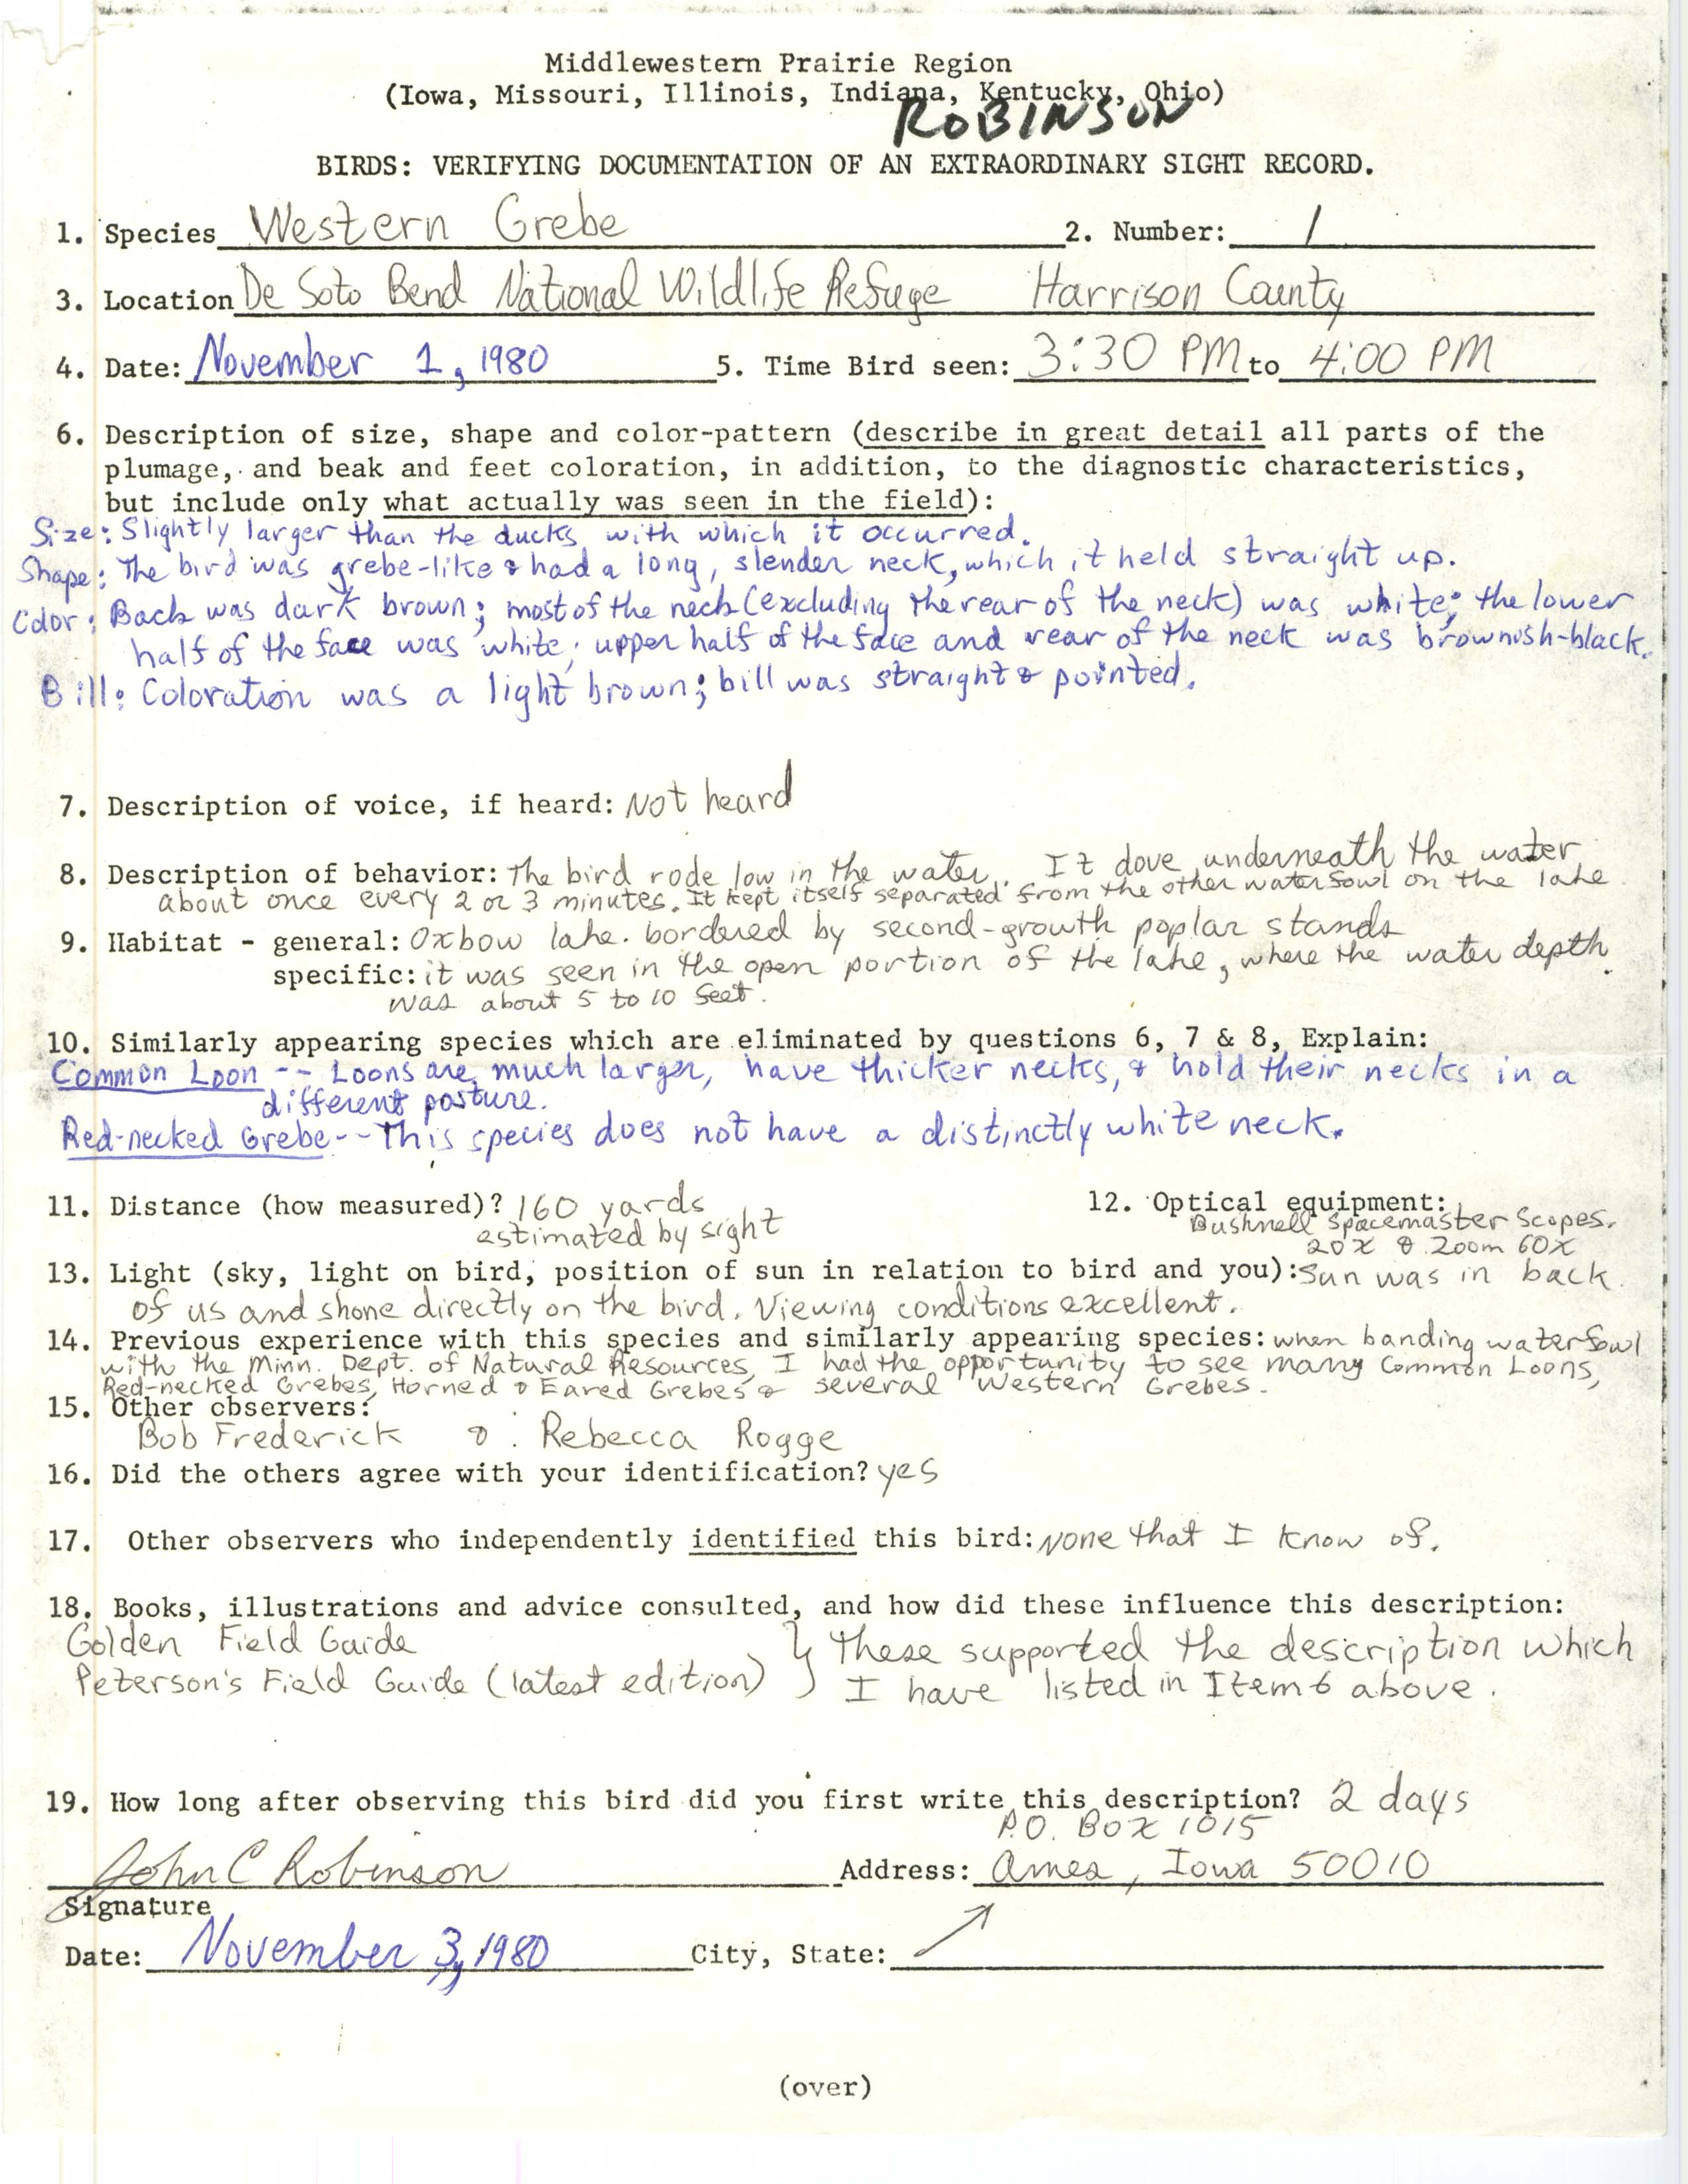 Rare bird documentation form for Western Grebe at DeSoto Bend National Wildlife Refuge, 1980